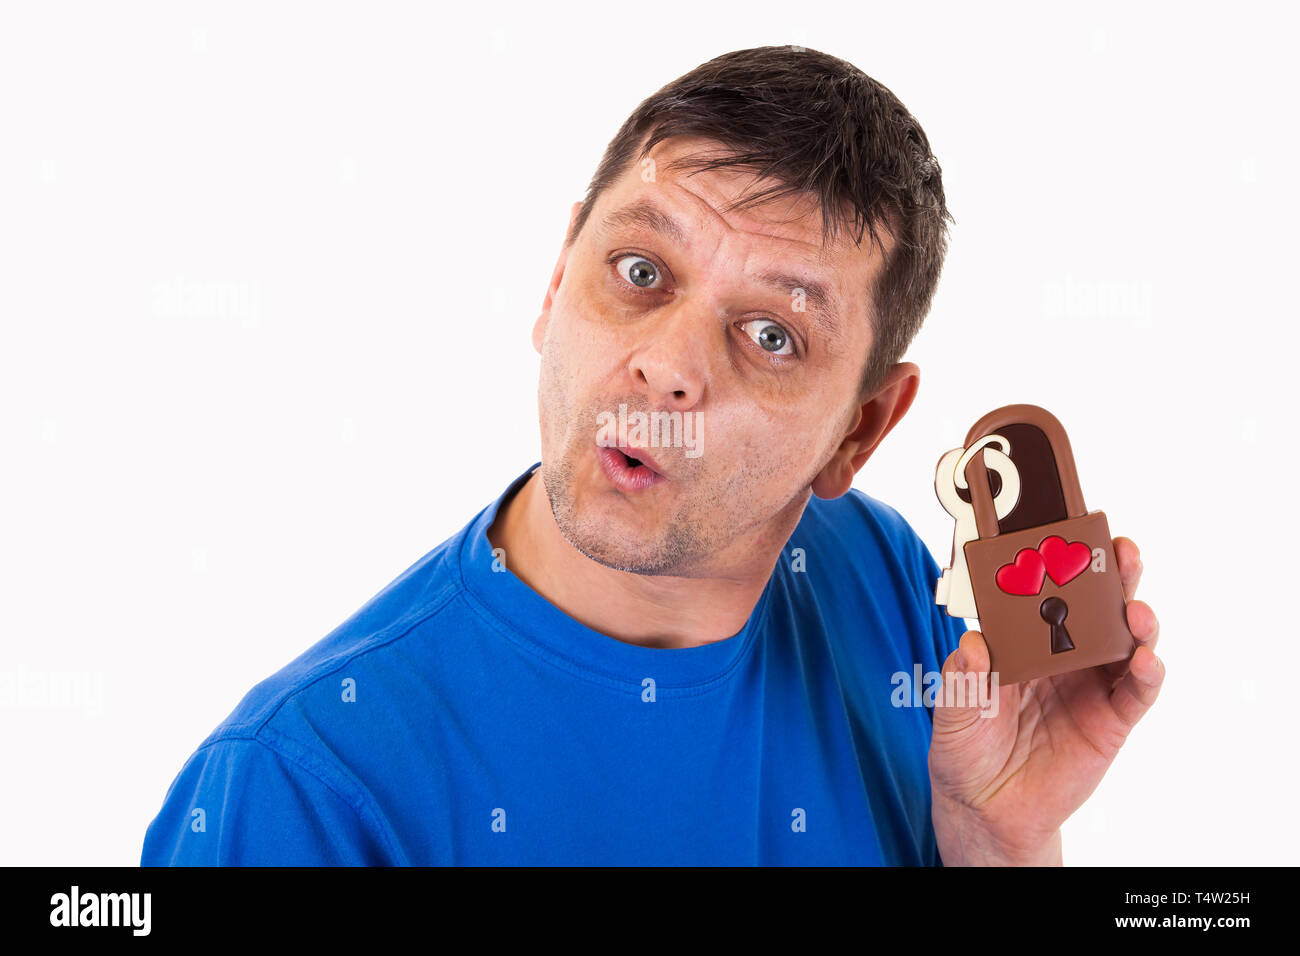 Un homme avec un chocolat - love lock dans sa main - isolé Banque D'Images